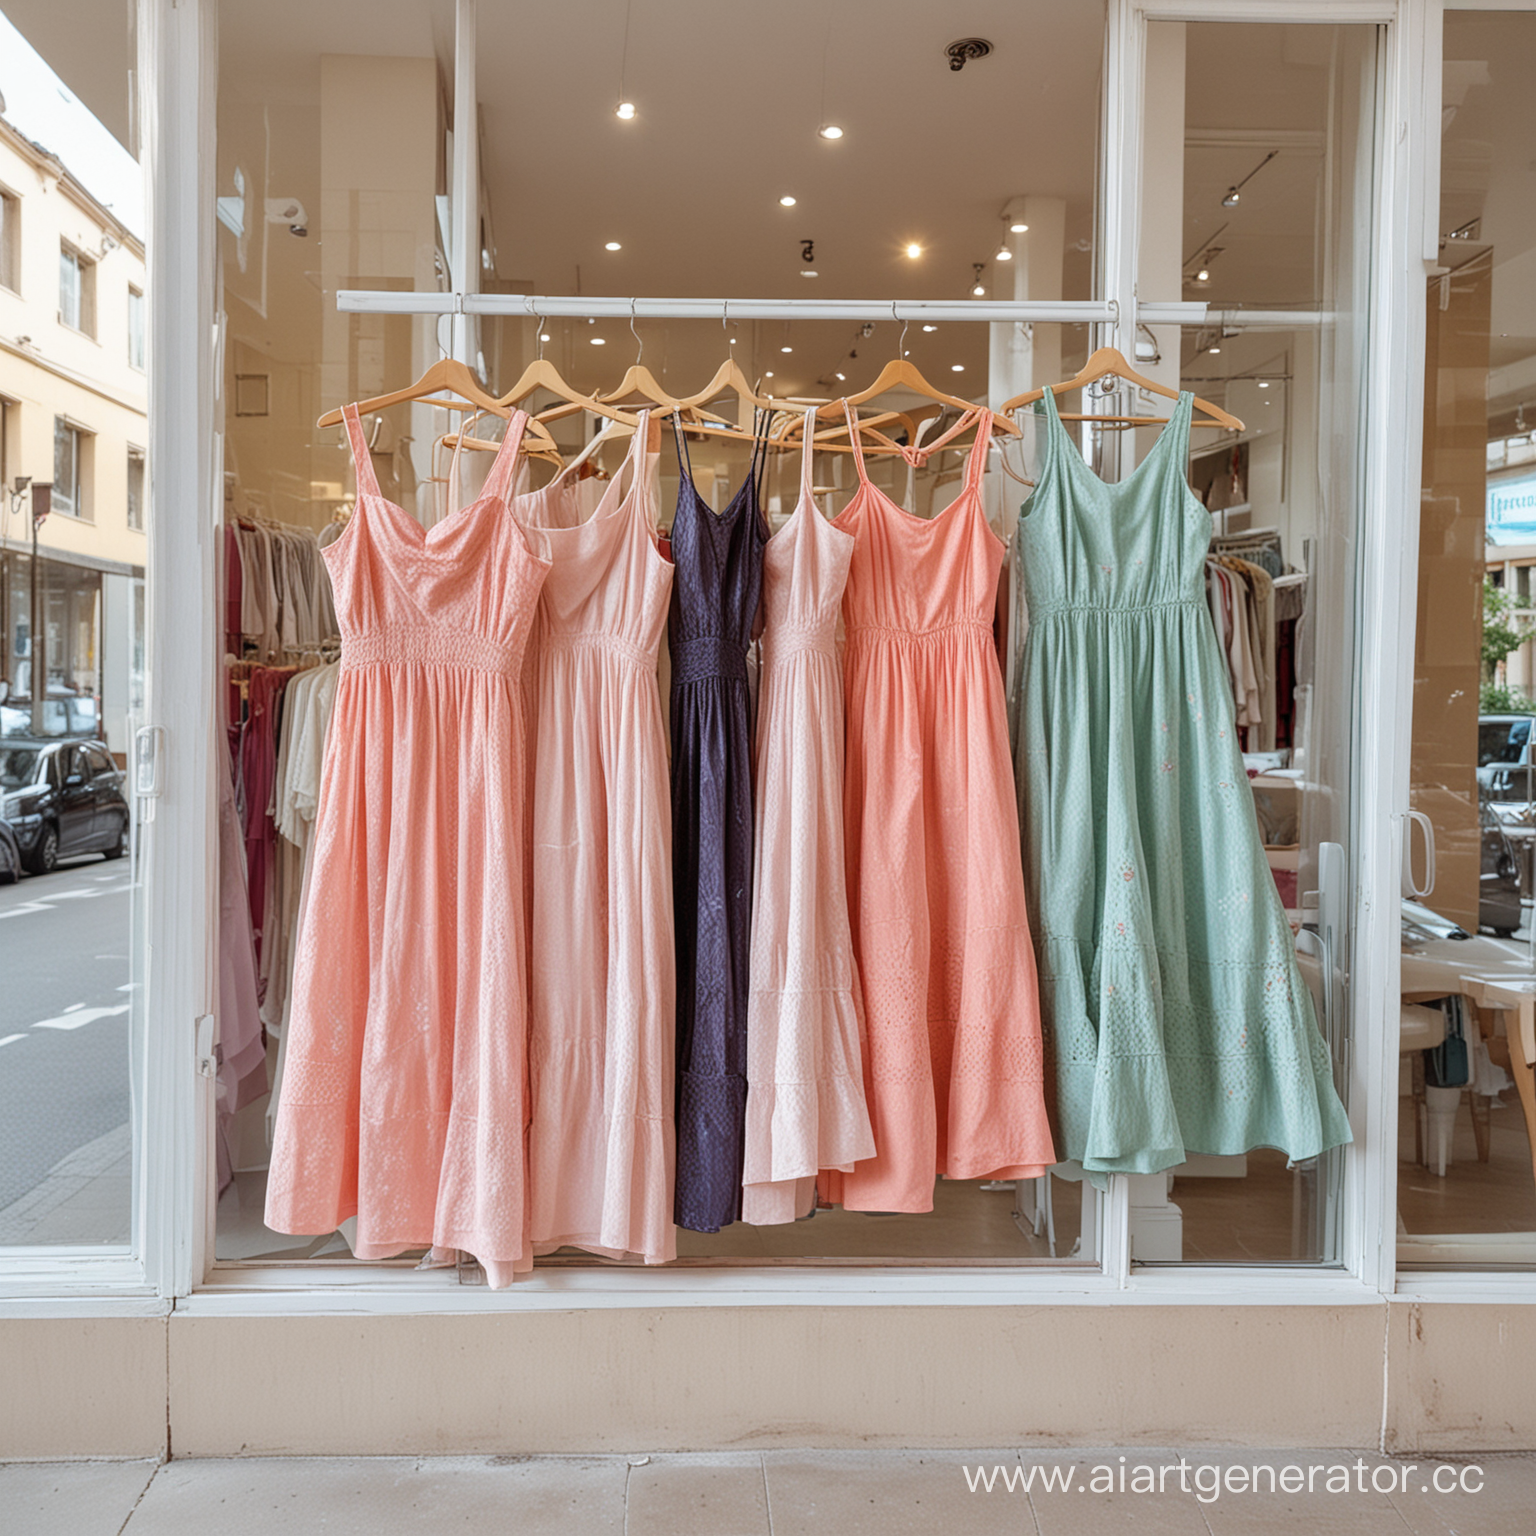 Светлый магазин одежды, на витрине висят красивые платья на вешалках